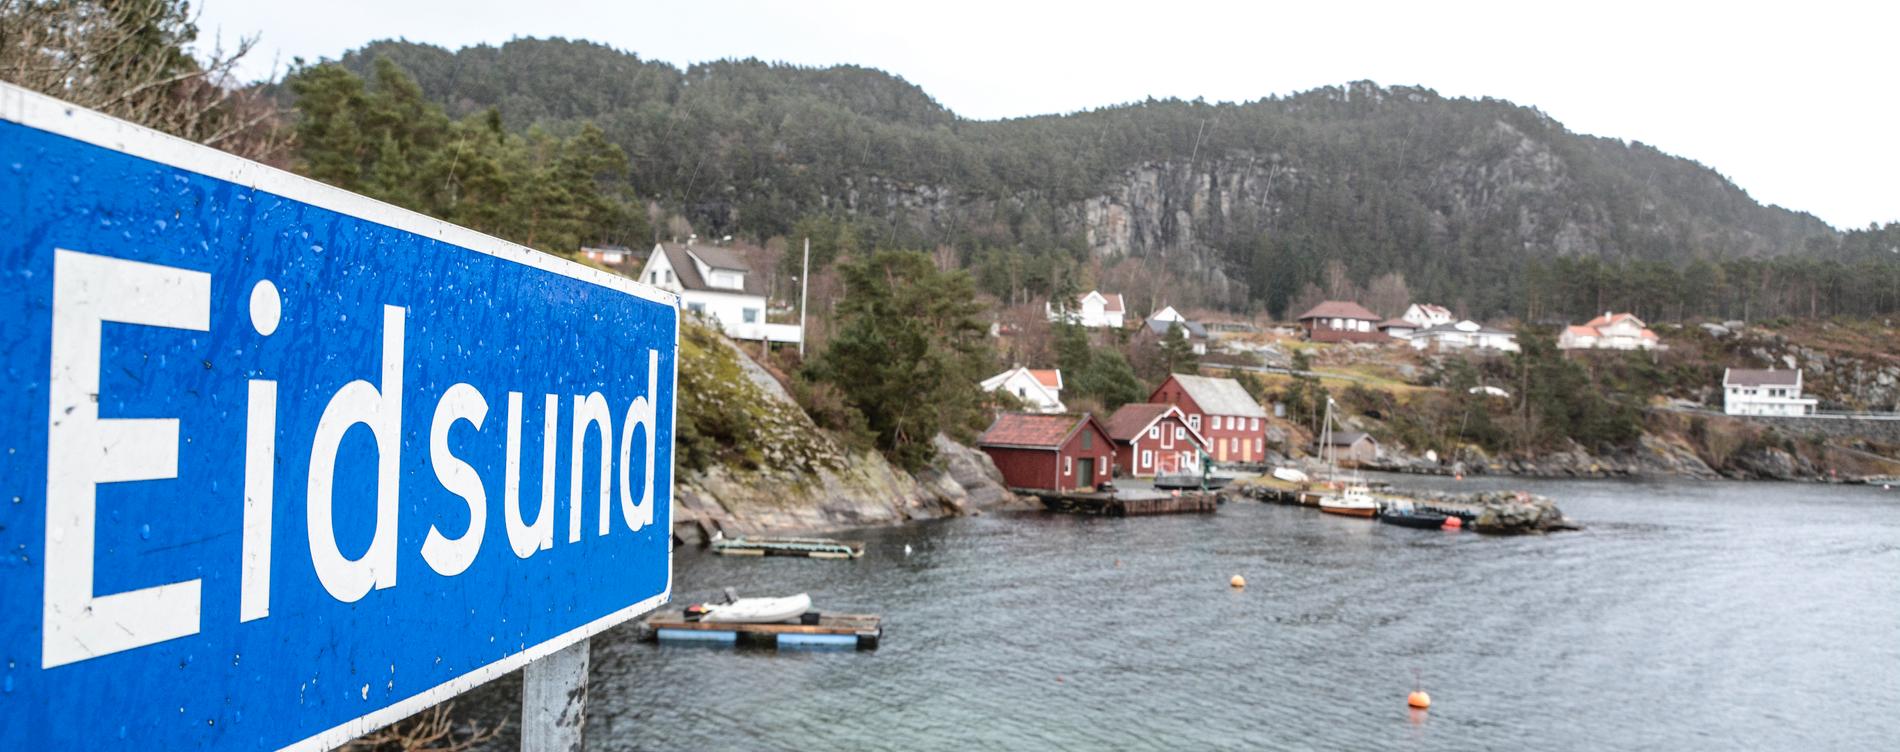 Det skjal vera andre reglar for boligbygging på øyar utan fastlandsforbindelse enn på dei med, meiner Stavanger kommune.